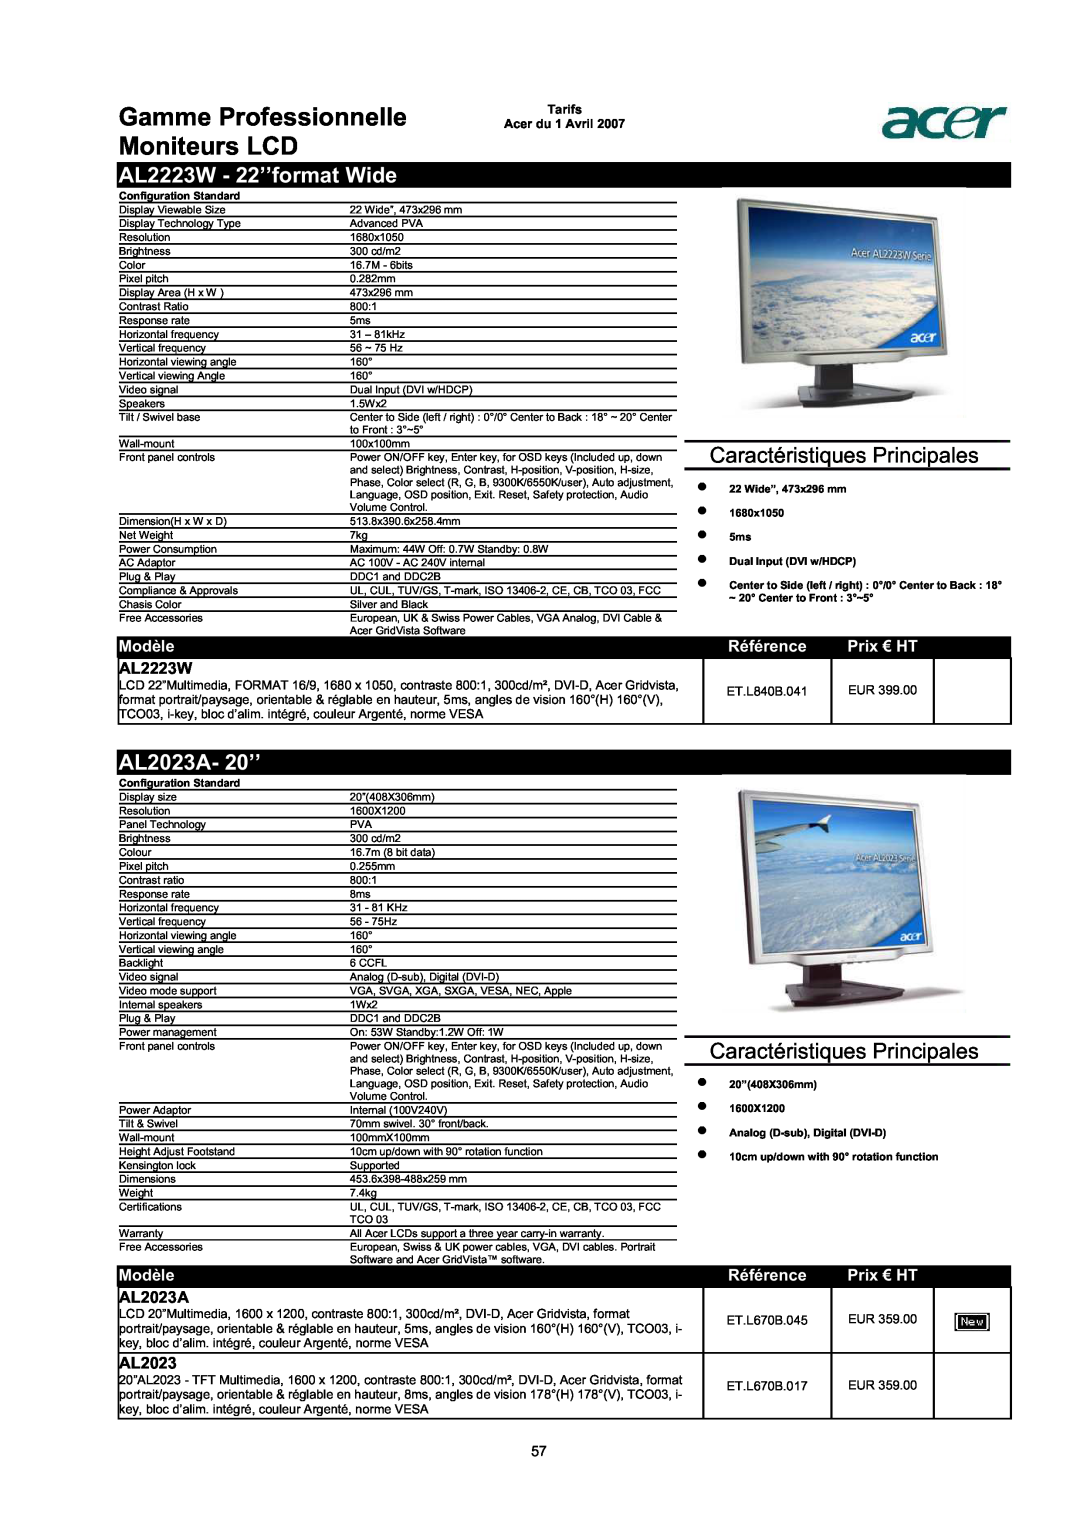 Acer AC713B-17 Gamme Professionnelle Moniteurs LCD, AL2223W - 22’’format Wide, AL2023A- 20’’, Caractéristiques Principales 